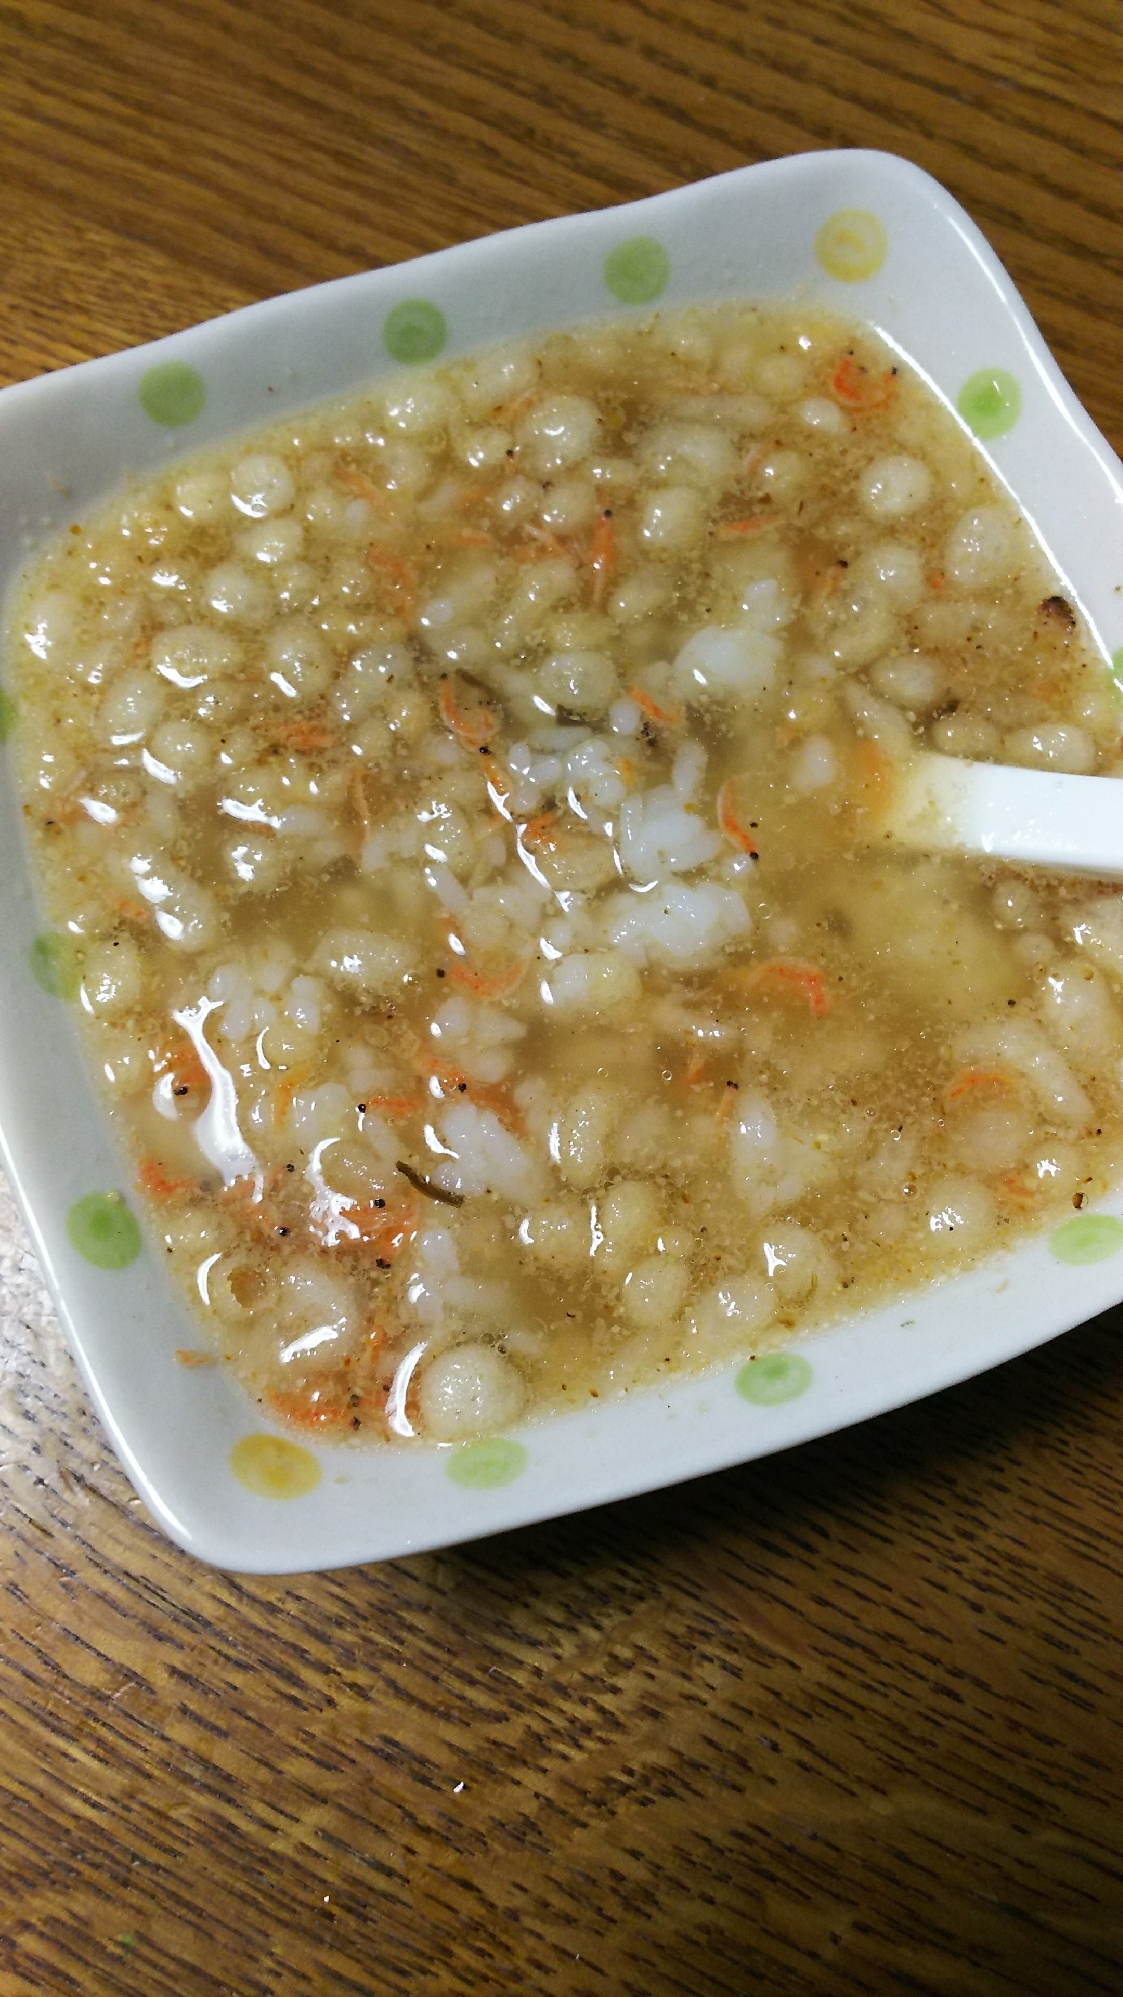 天かす&あみえび&塩昆布のダシダスープご飯